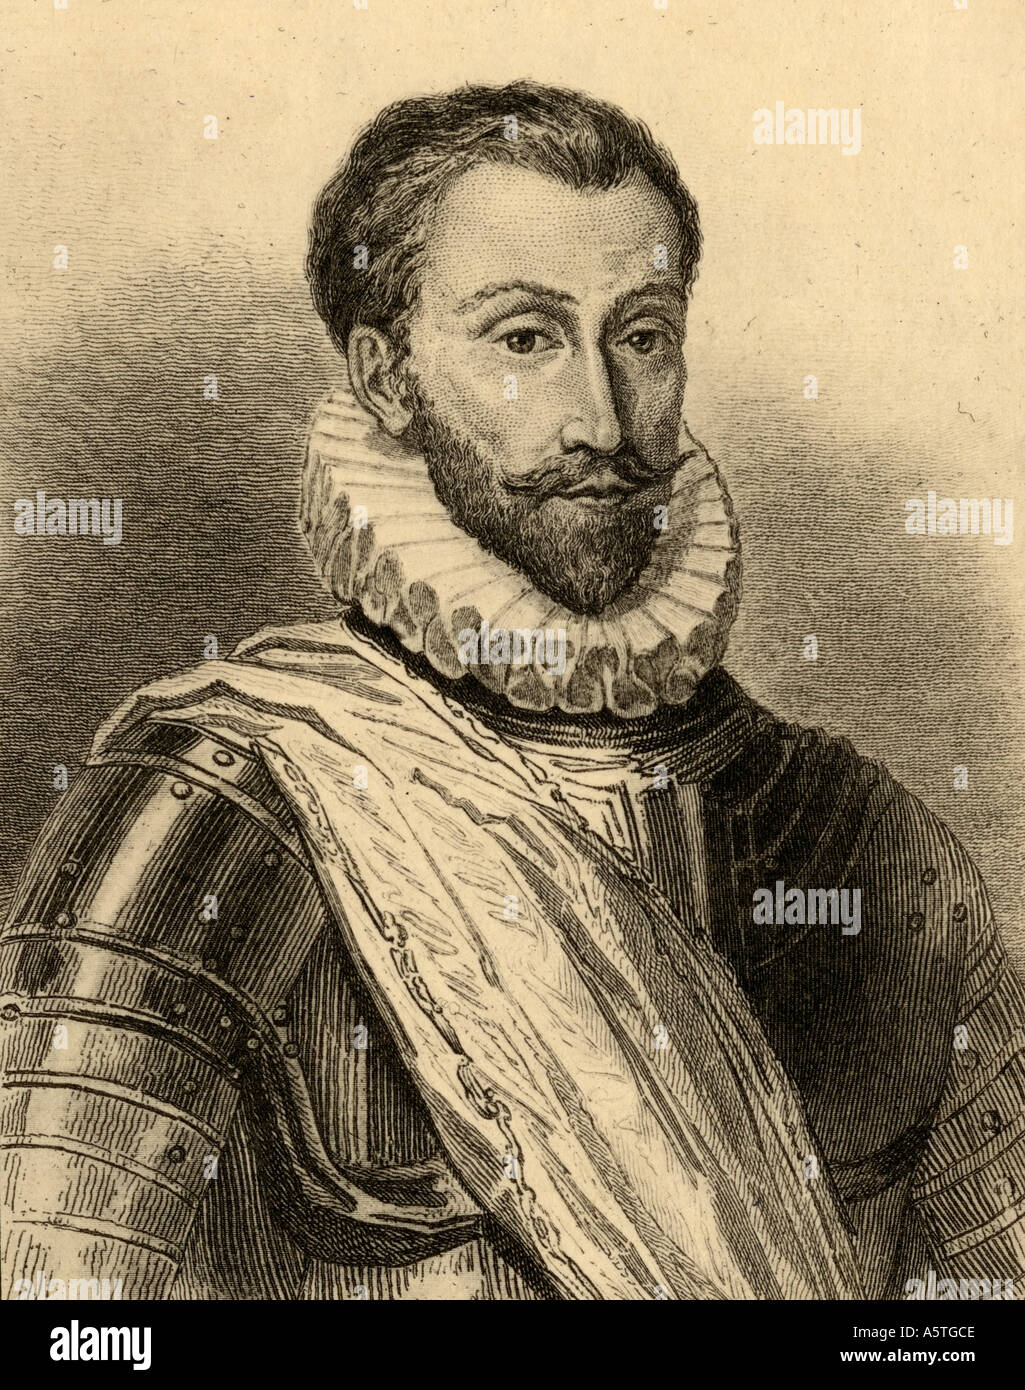 Francois de la Noue, llamado Bras-de-Fer, 1531 - 1591. Capitán hugonote francés en las guerras de religión. Foto de stock